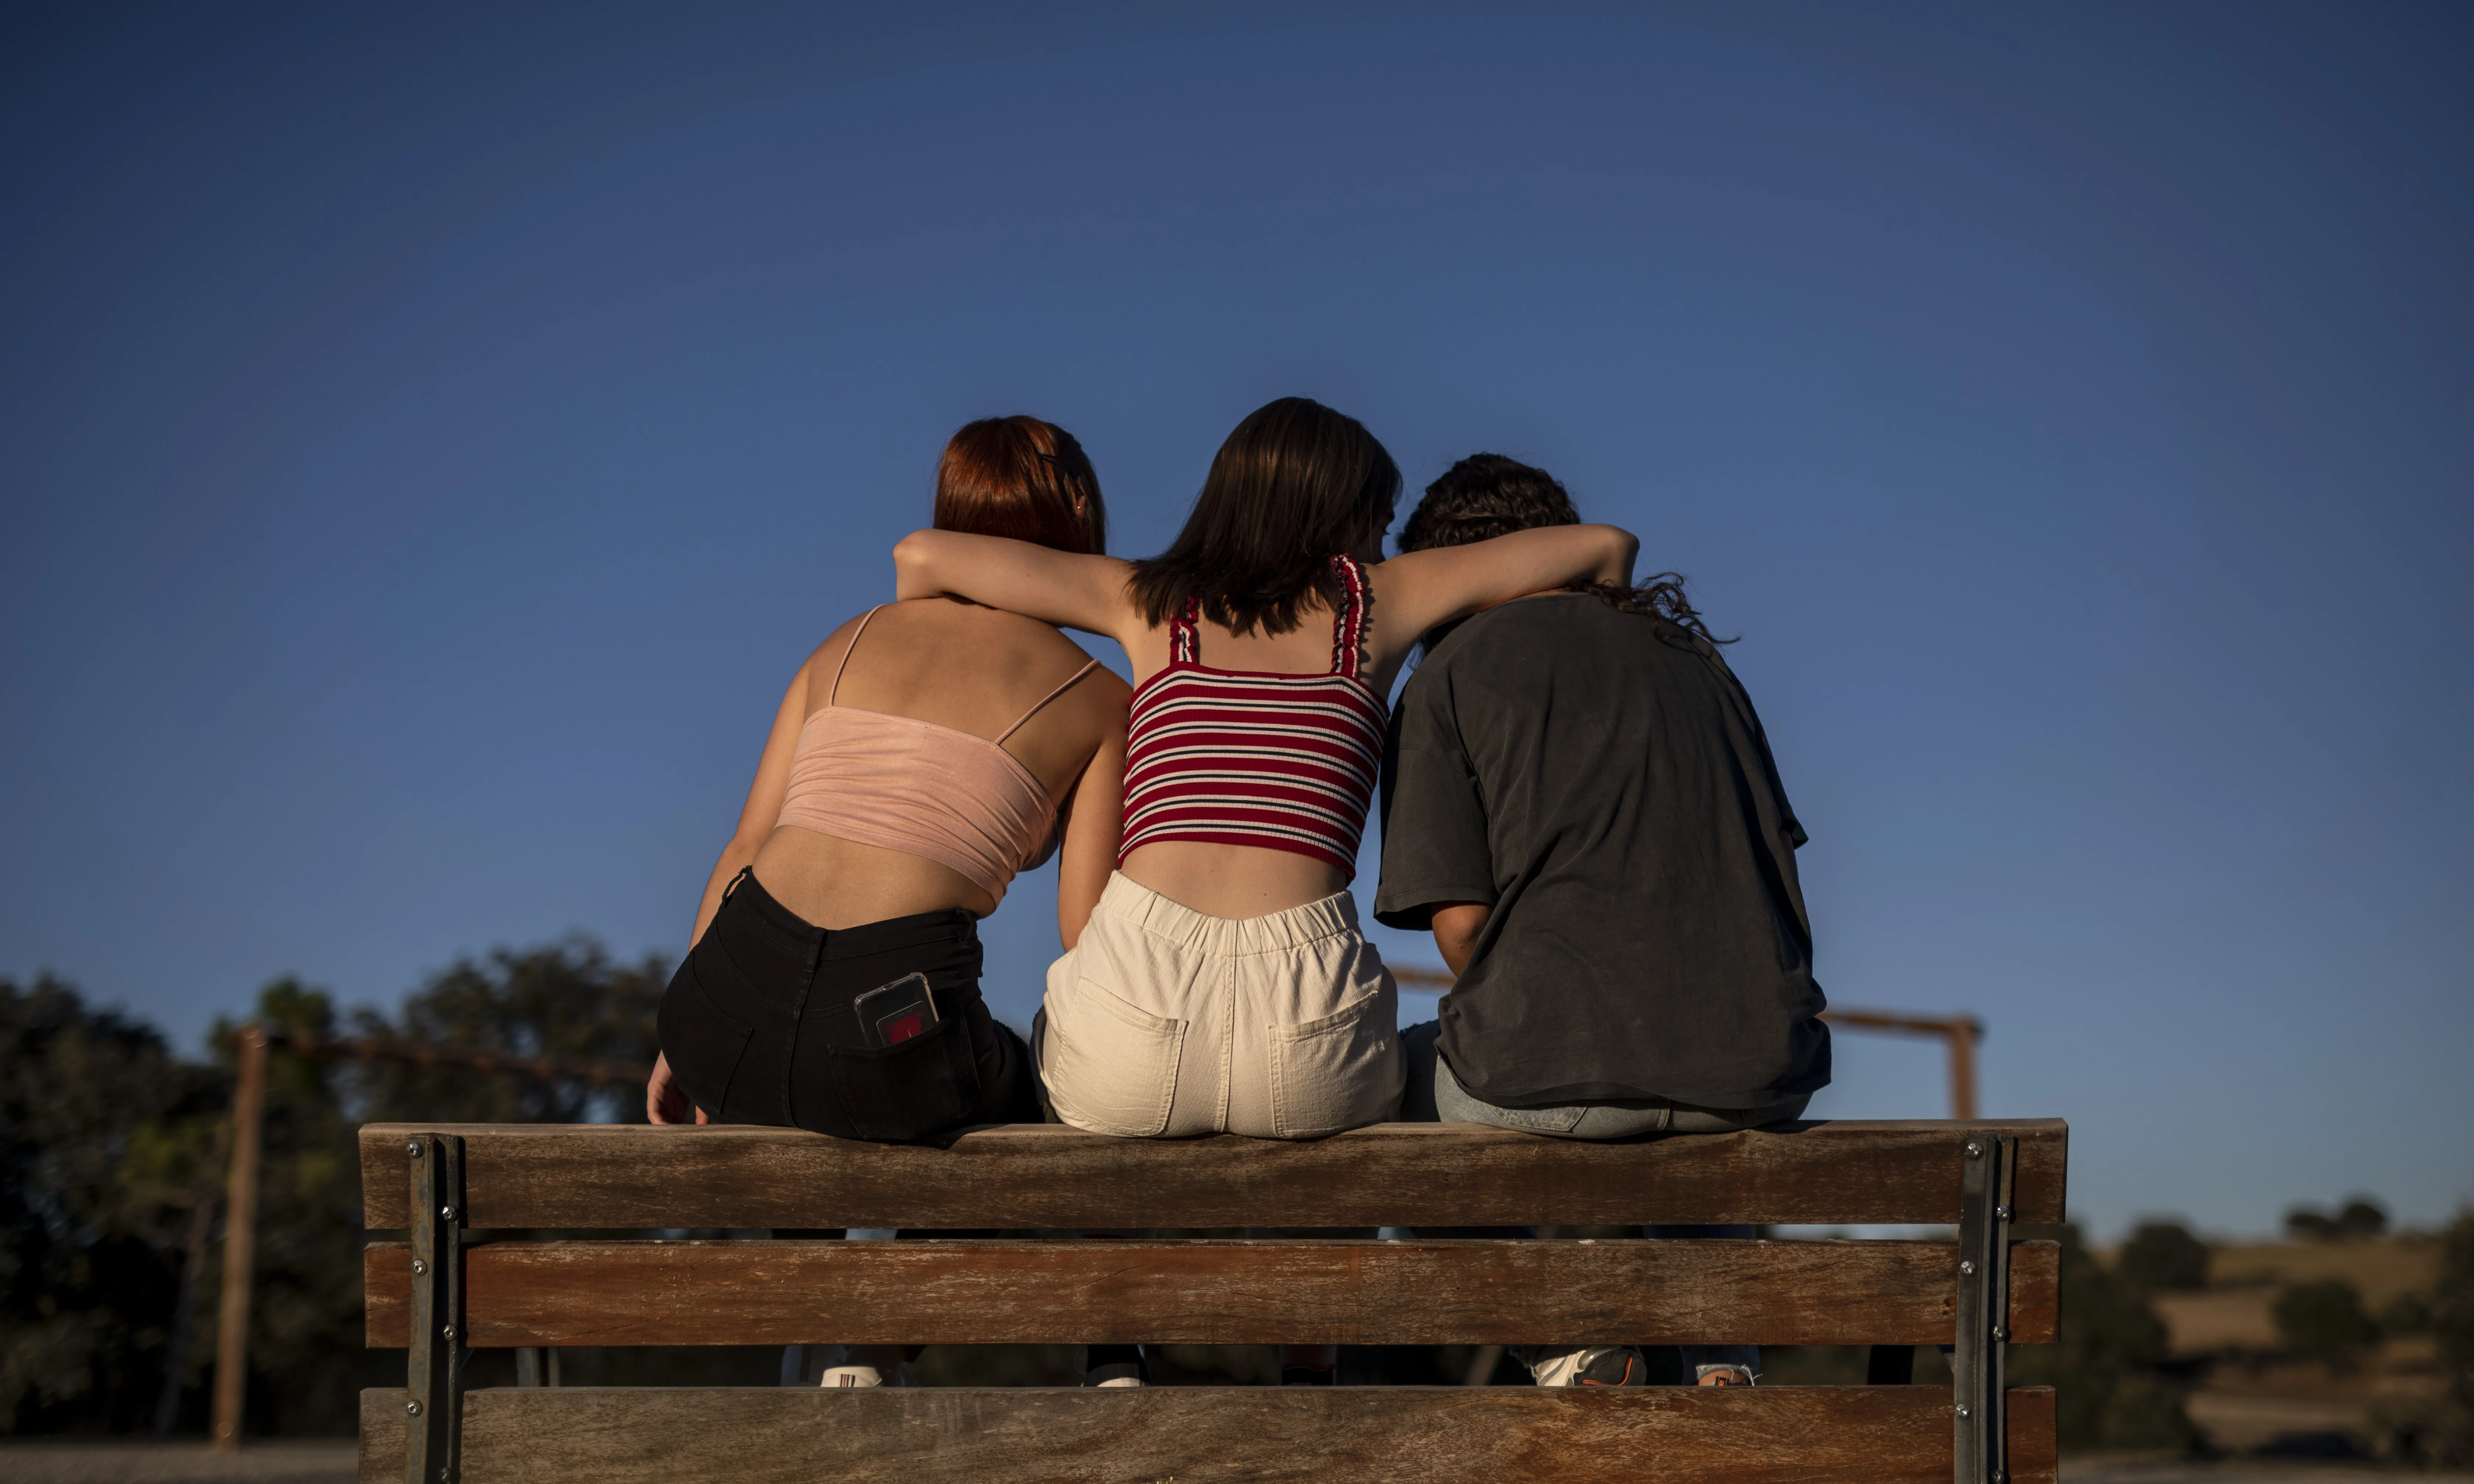 Escena representada: tres noies seuen a un banc donant-se suport.